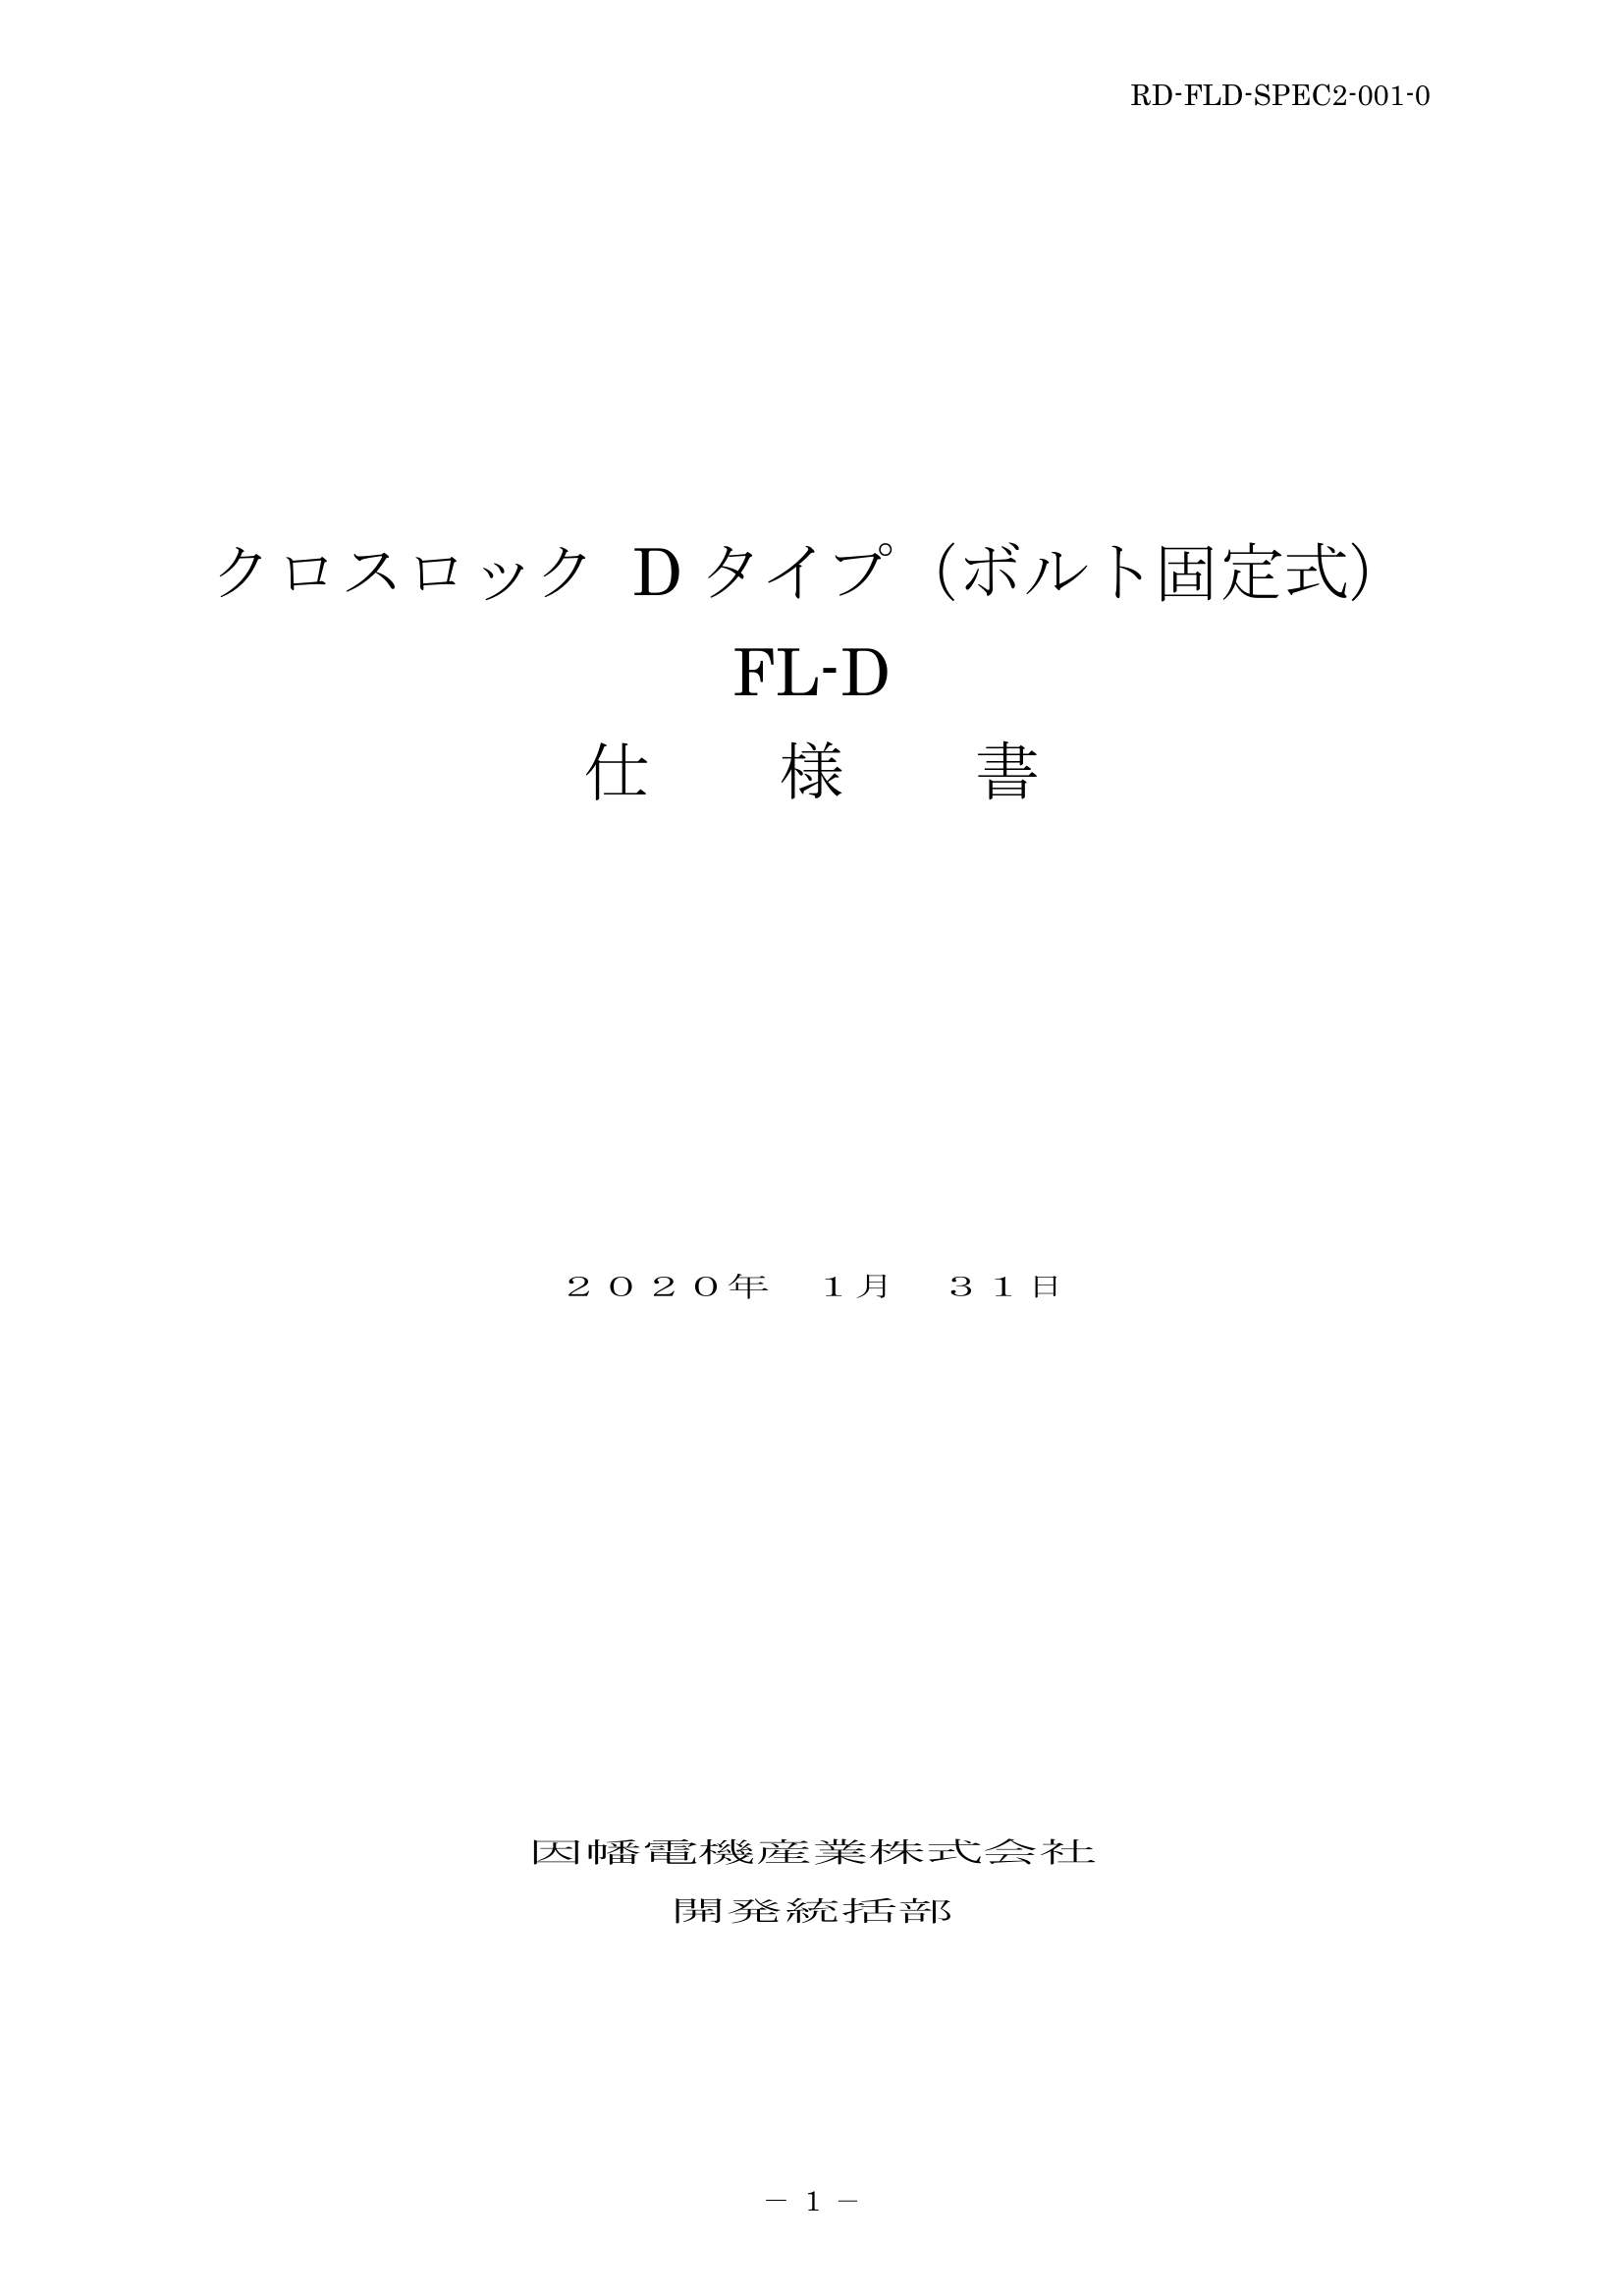 FL-D_仕様書_20200131.pdf